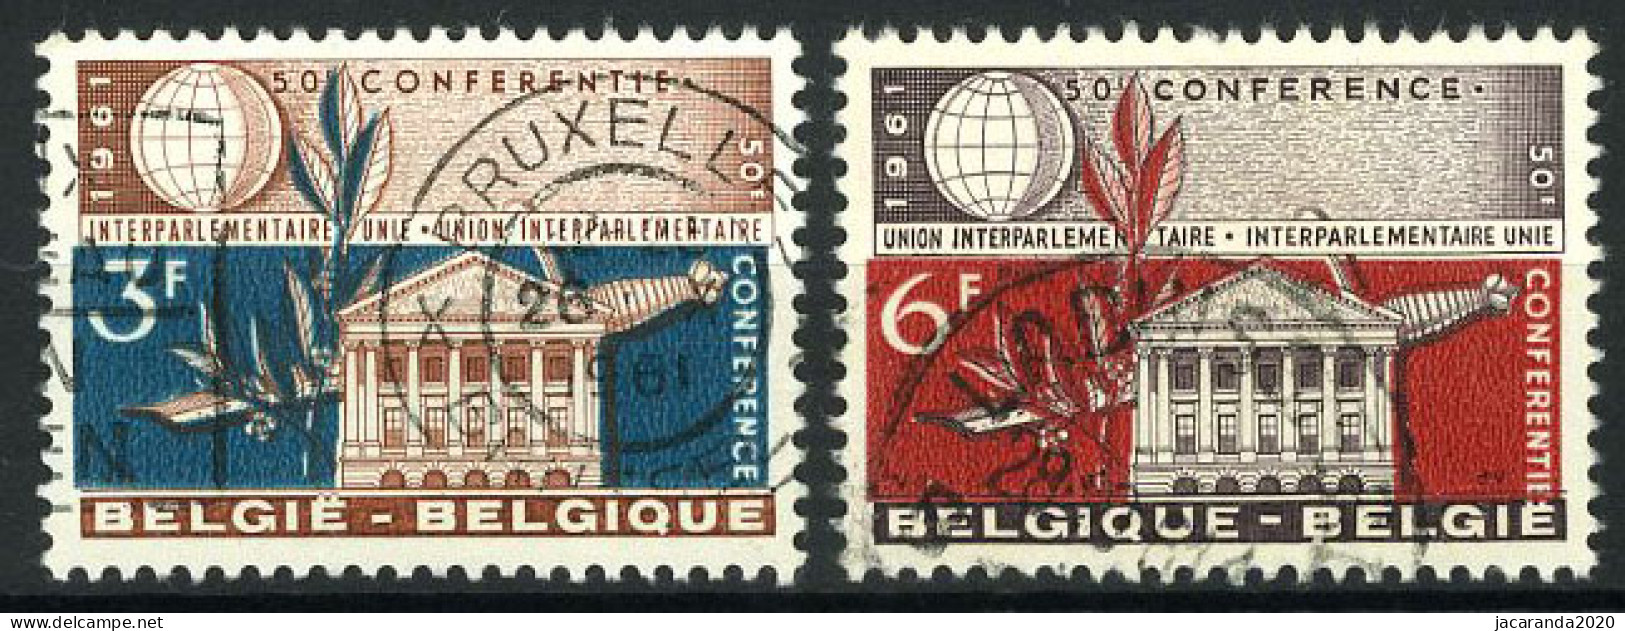 België 1191/92 - Interparlementaire Unie - Gestempeld - Oblitéré - Used - Gebruikt